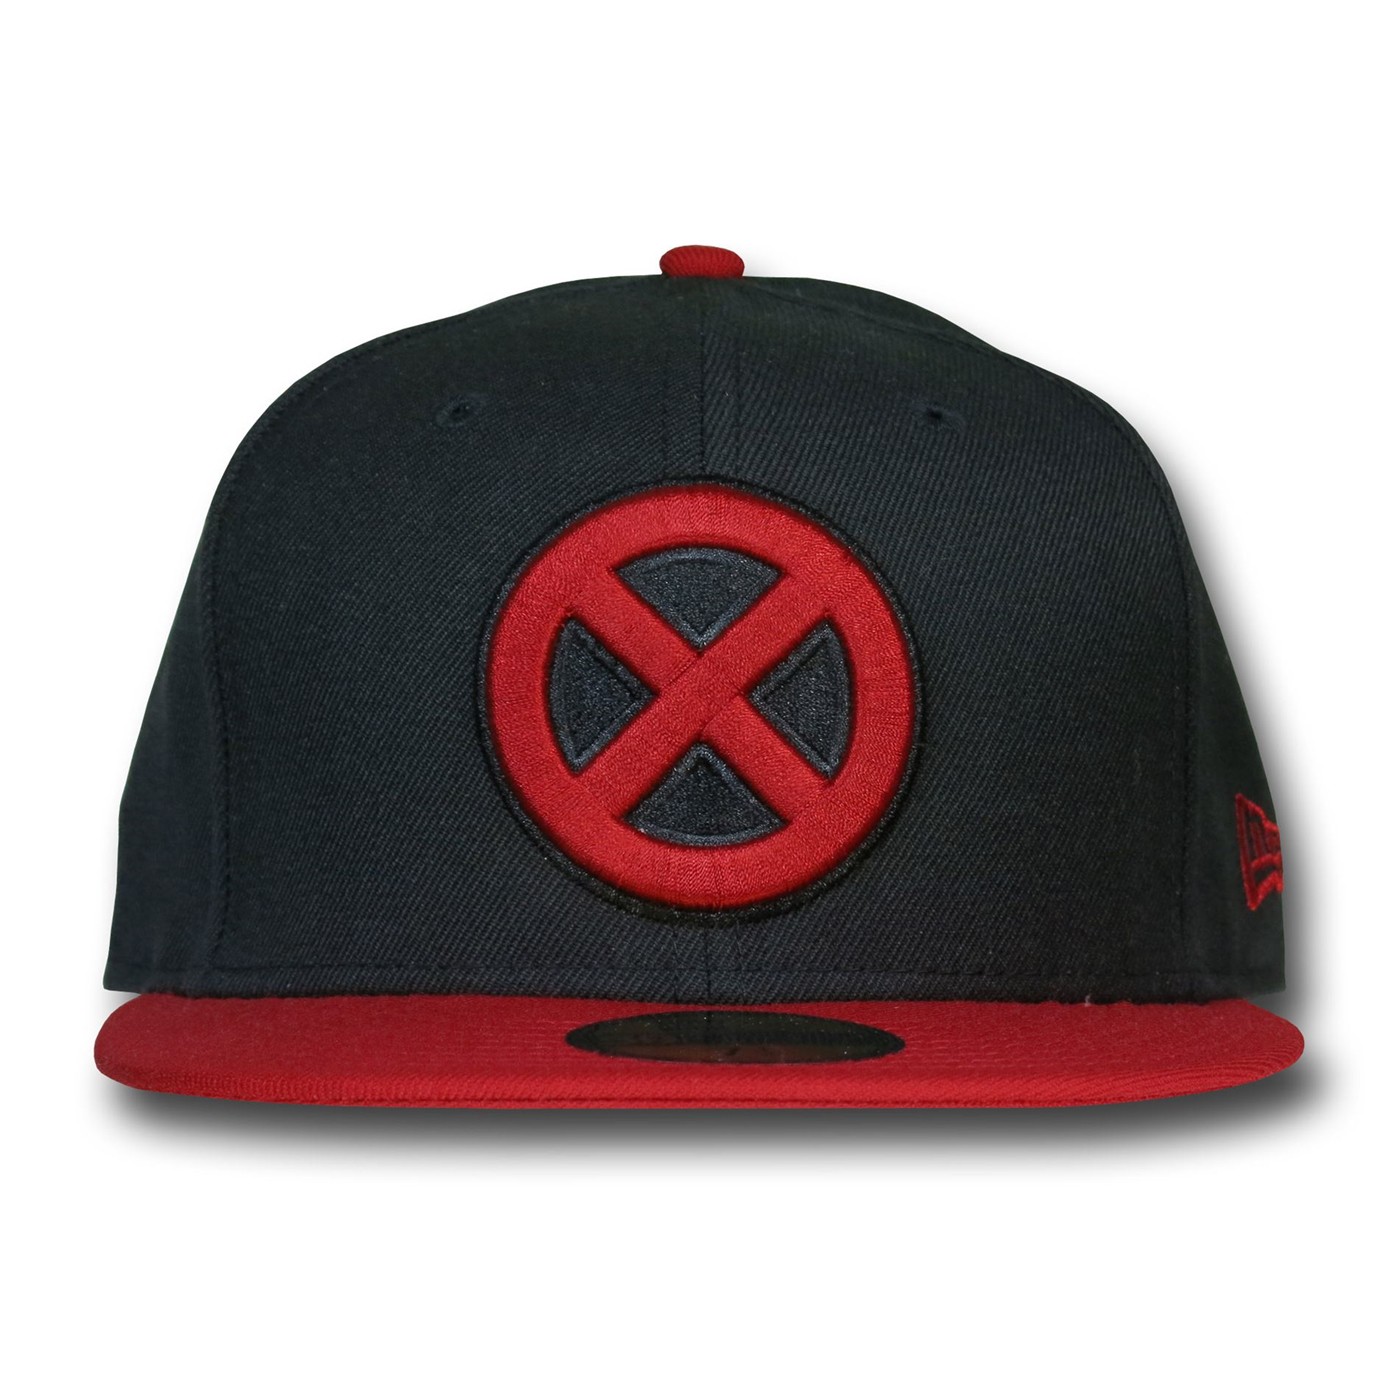 X-Men Symbol Red Bill Black 59Fifty Cap